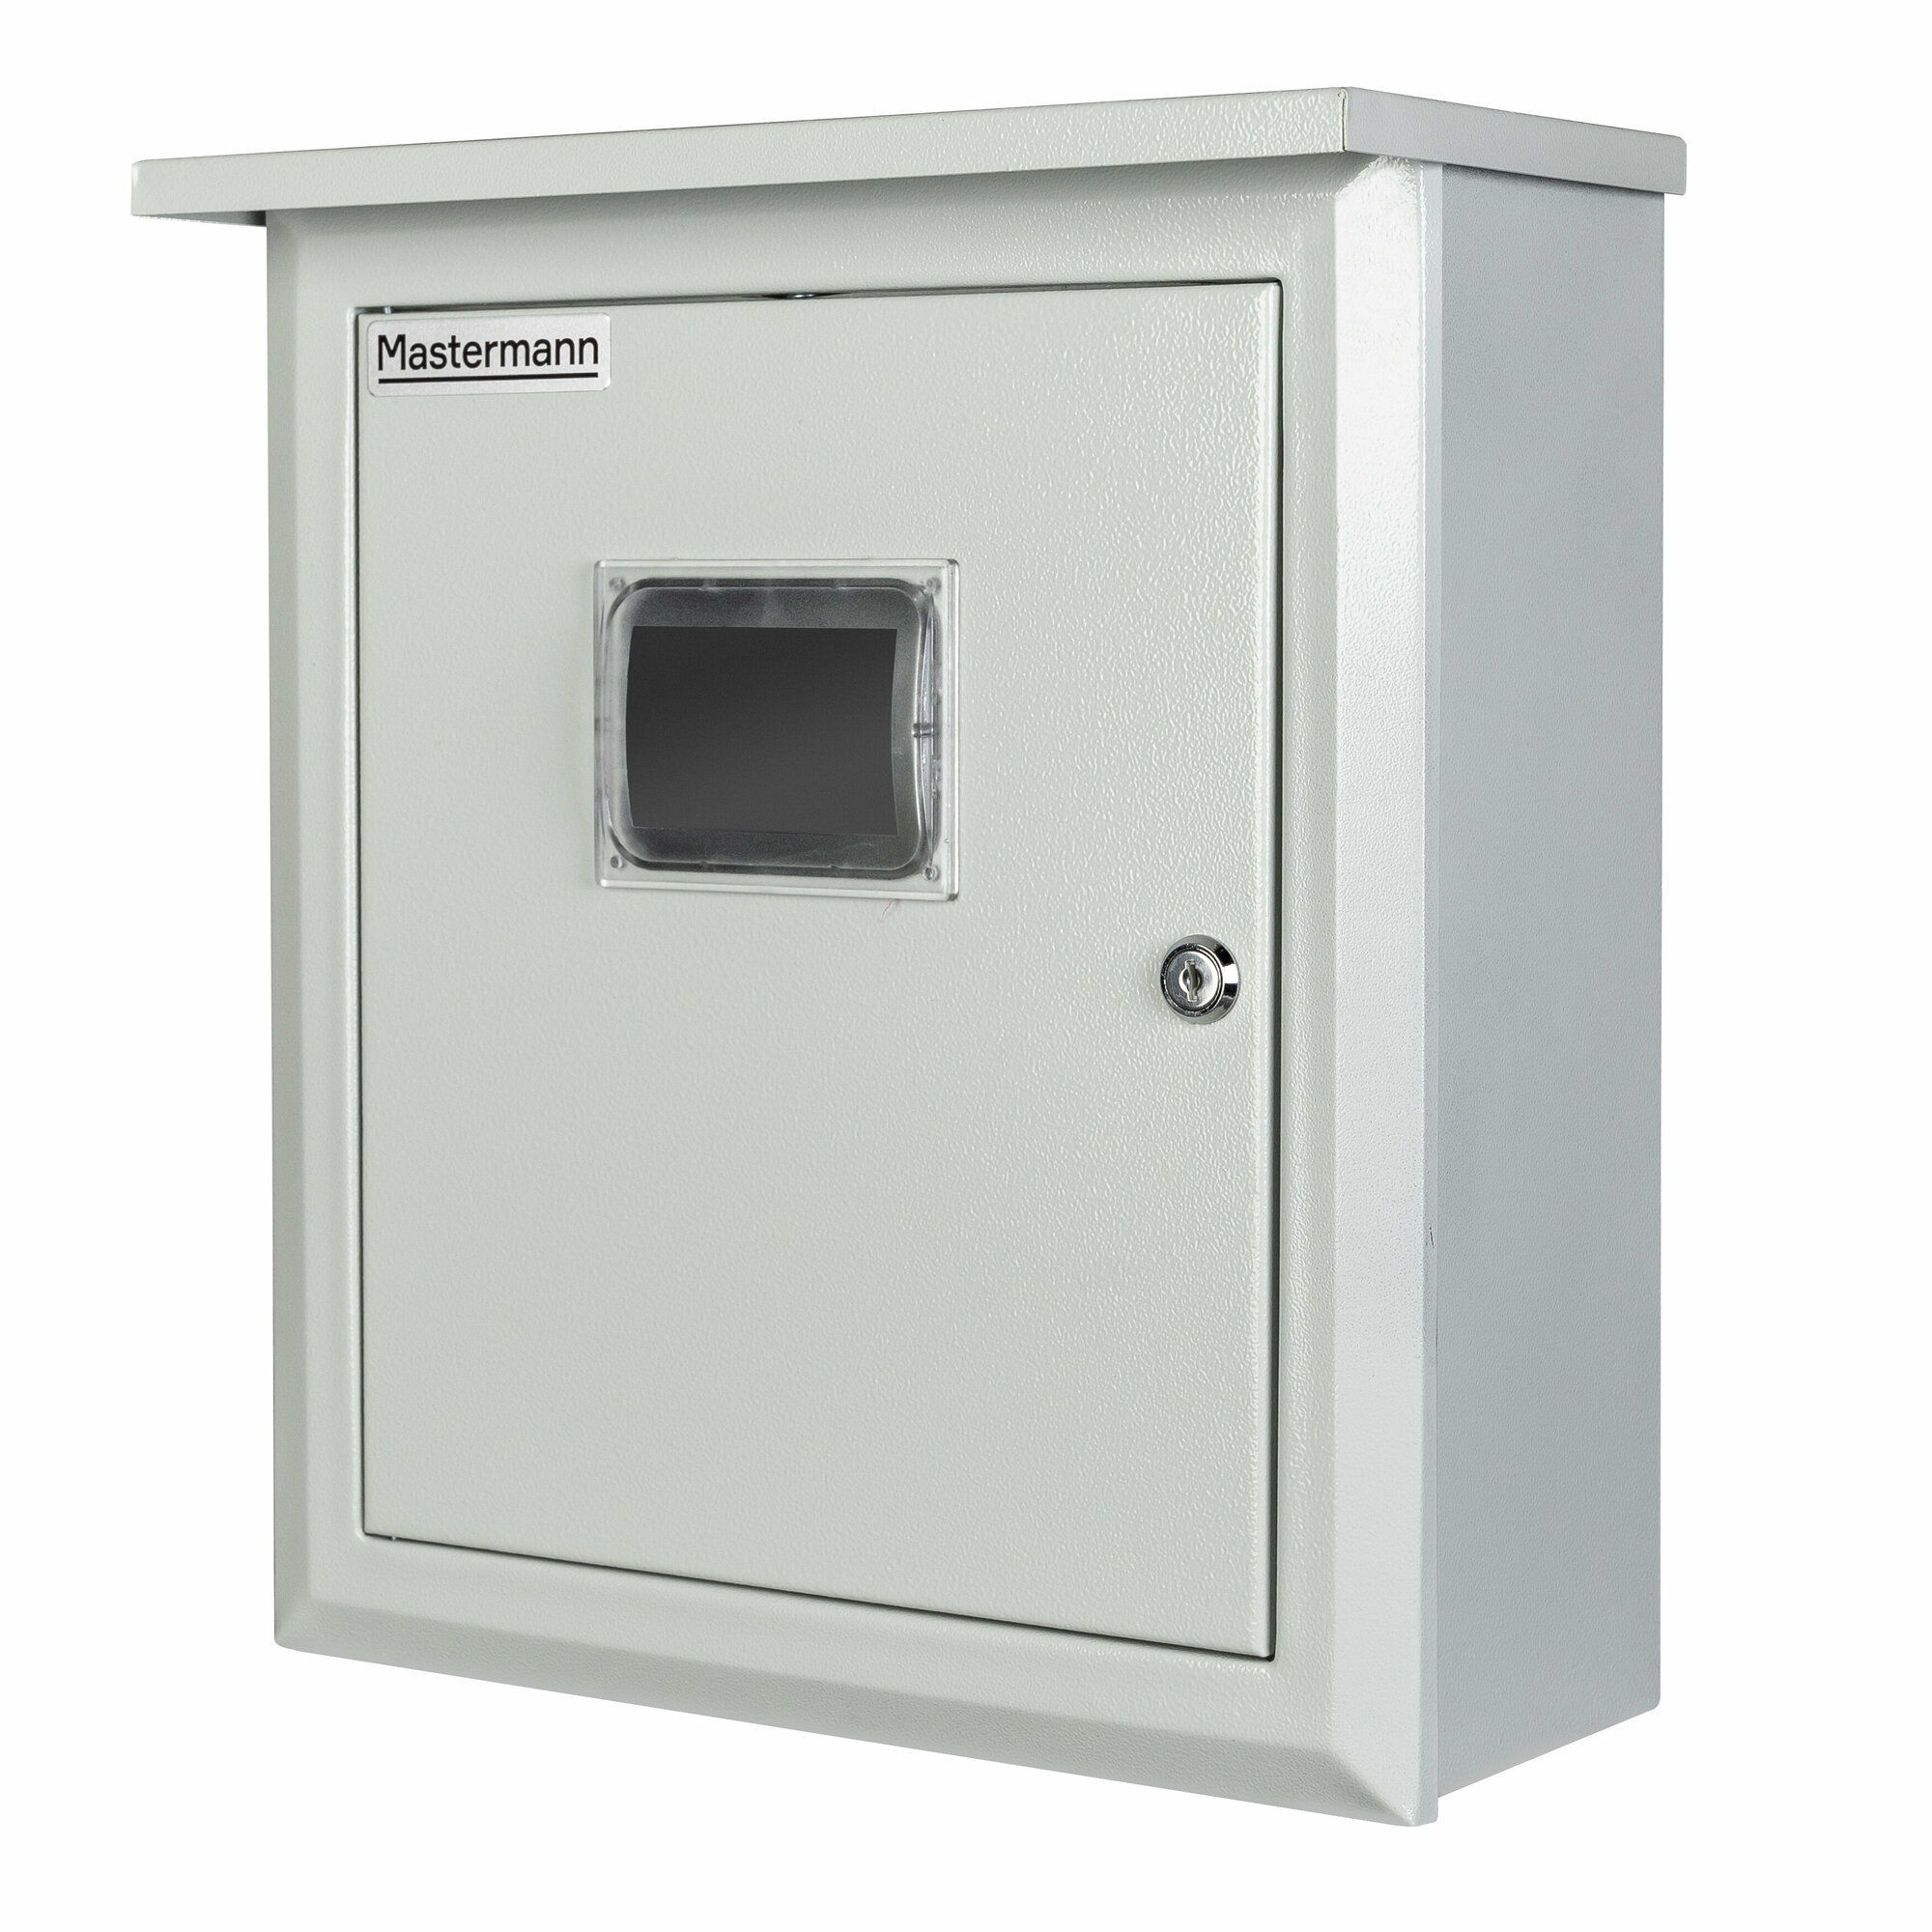 Универсальный монтажный шкаф с козырьком MASTERMANN 3КС (со стеклом), 400х350х140 мм, IP 41